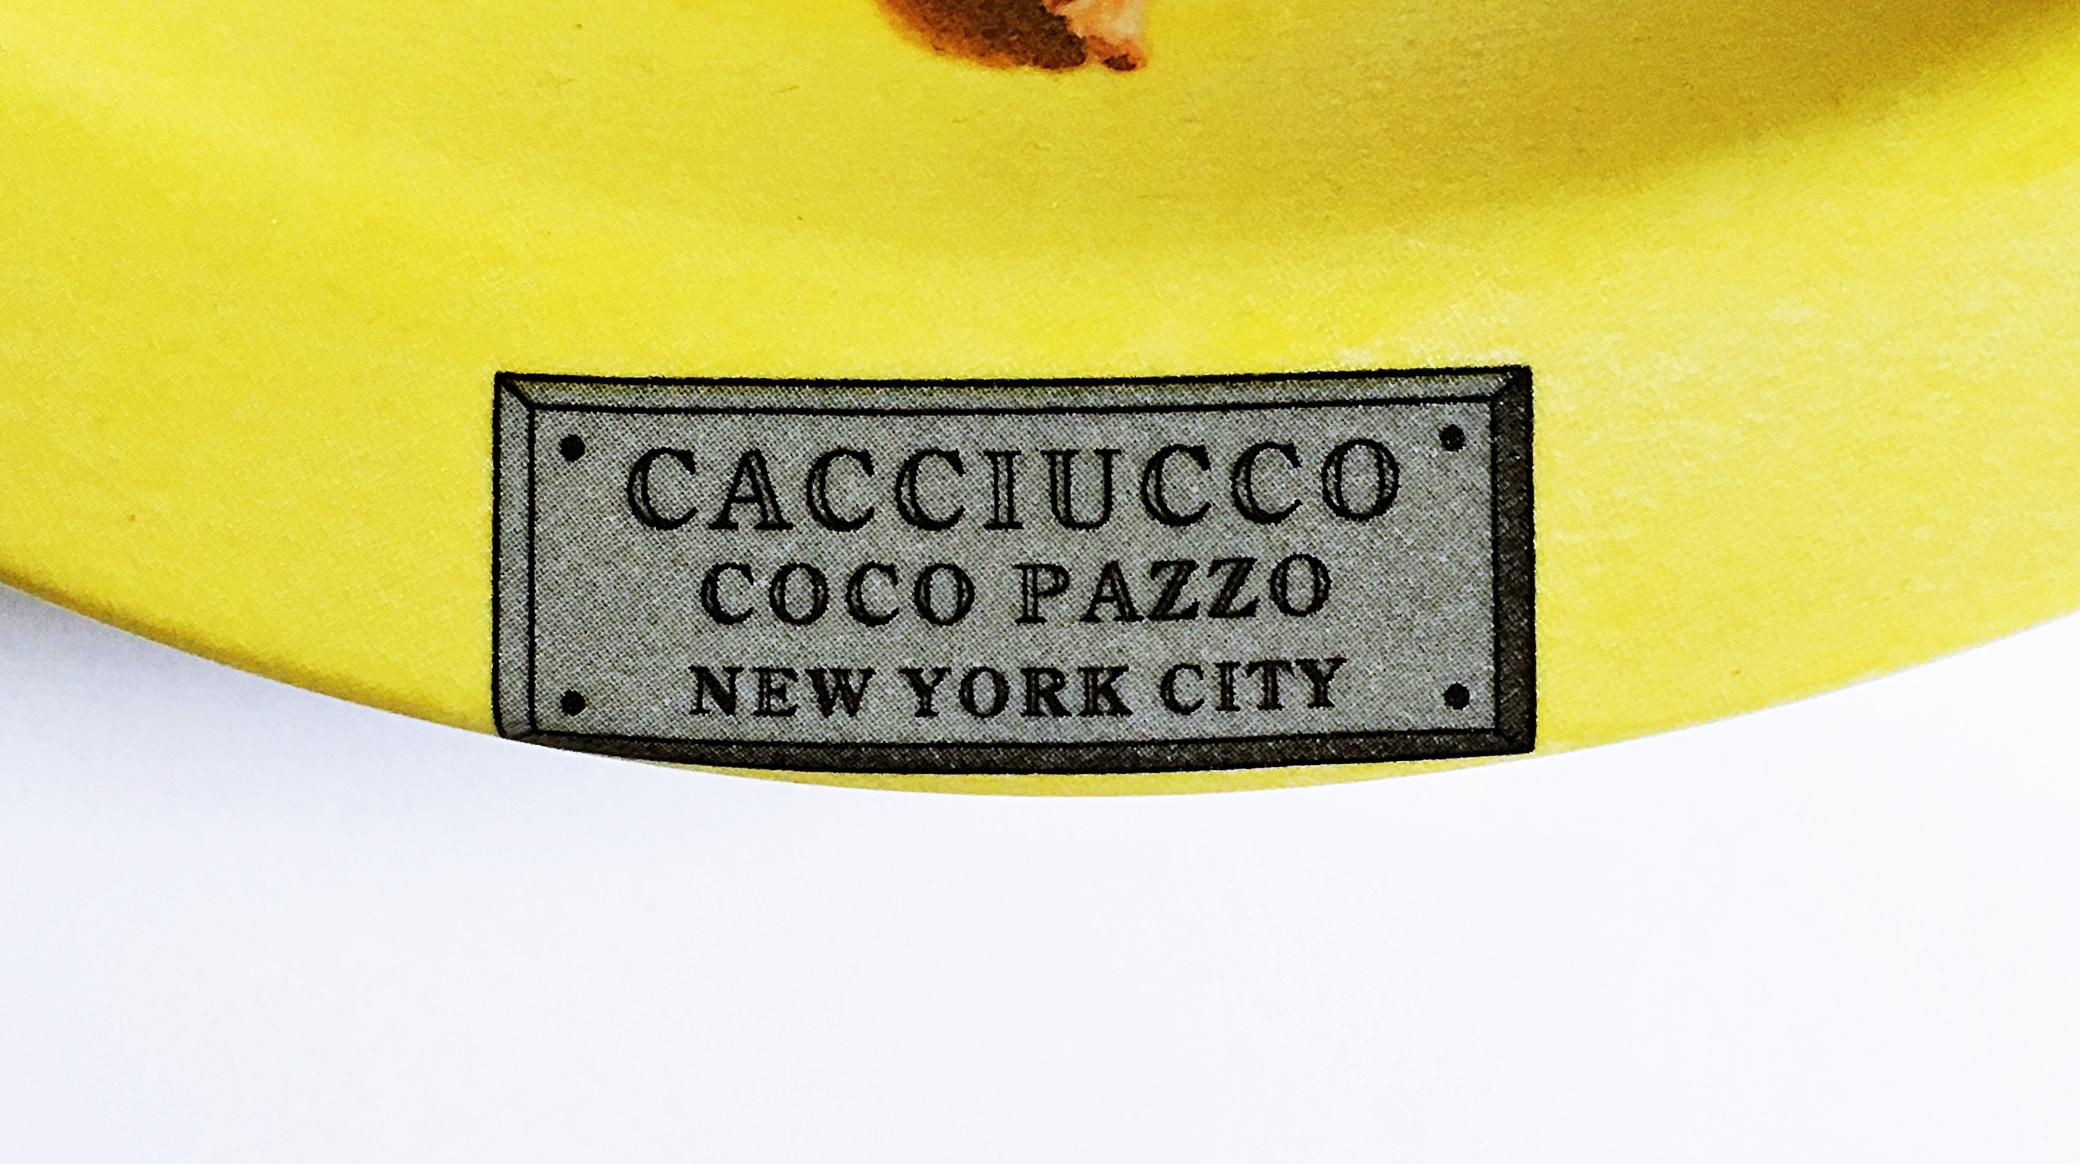 Cacciucco - Coco Pazzo - New York, NY - Pop Art Art by Mel Ramos